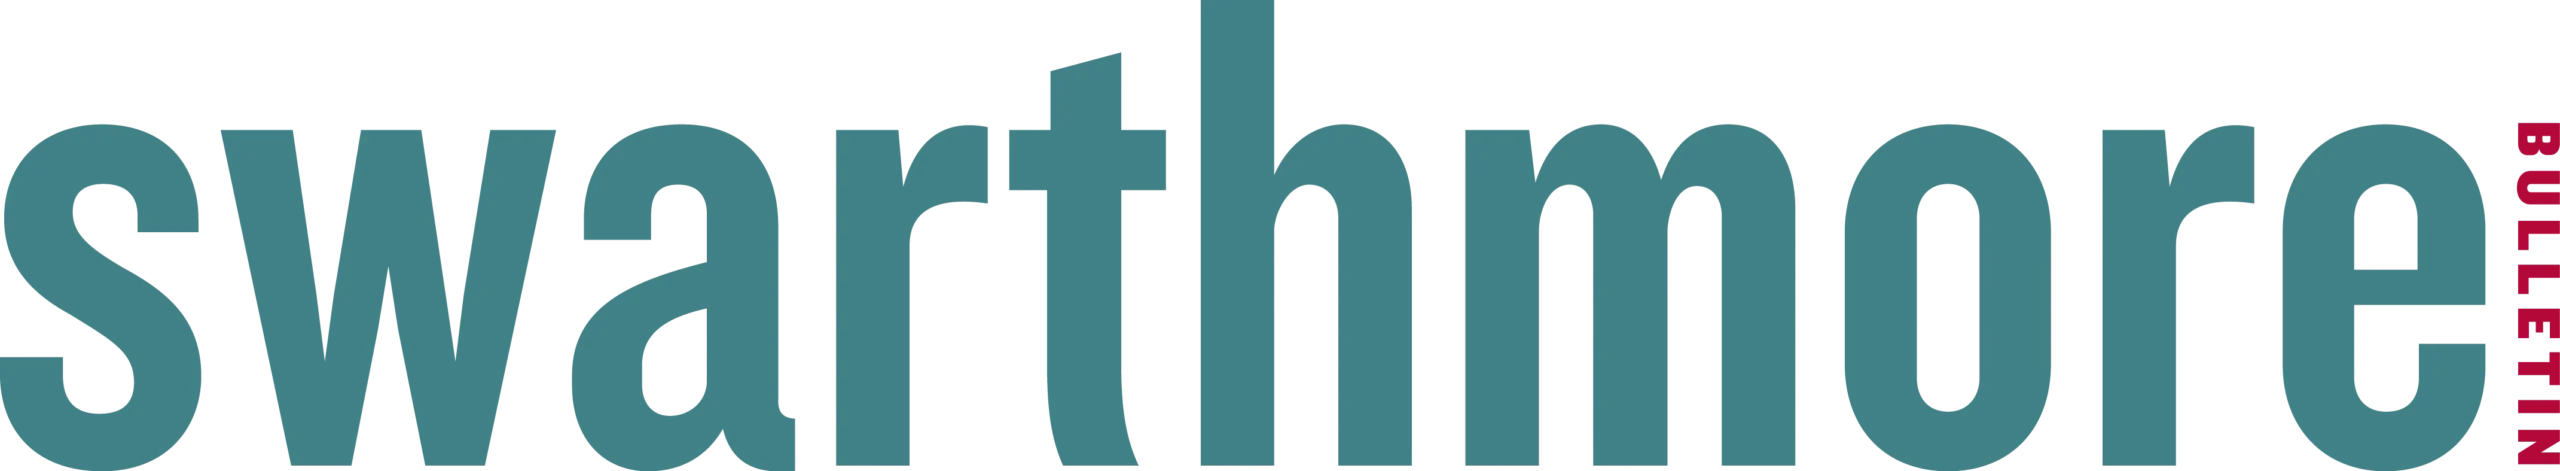 Swarthmore Bulletin logo